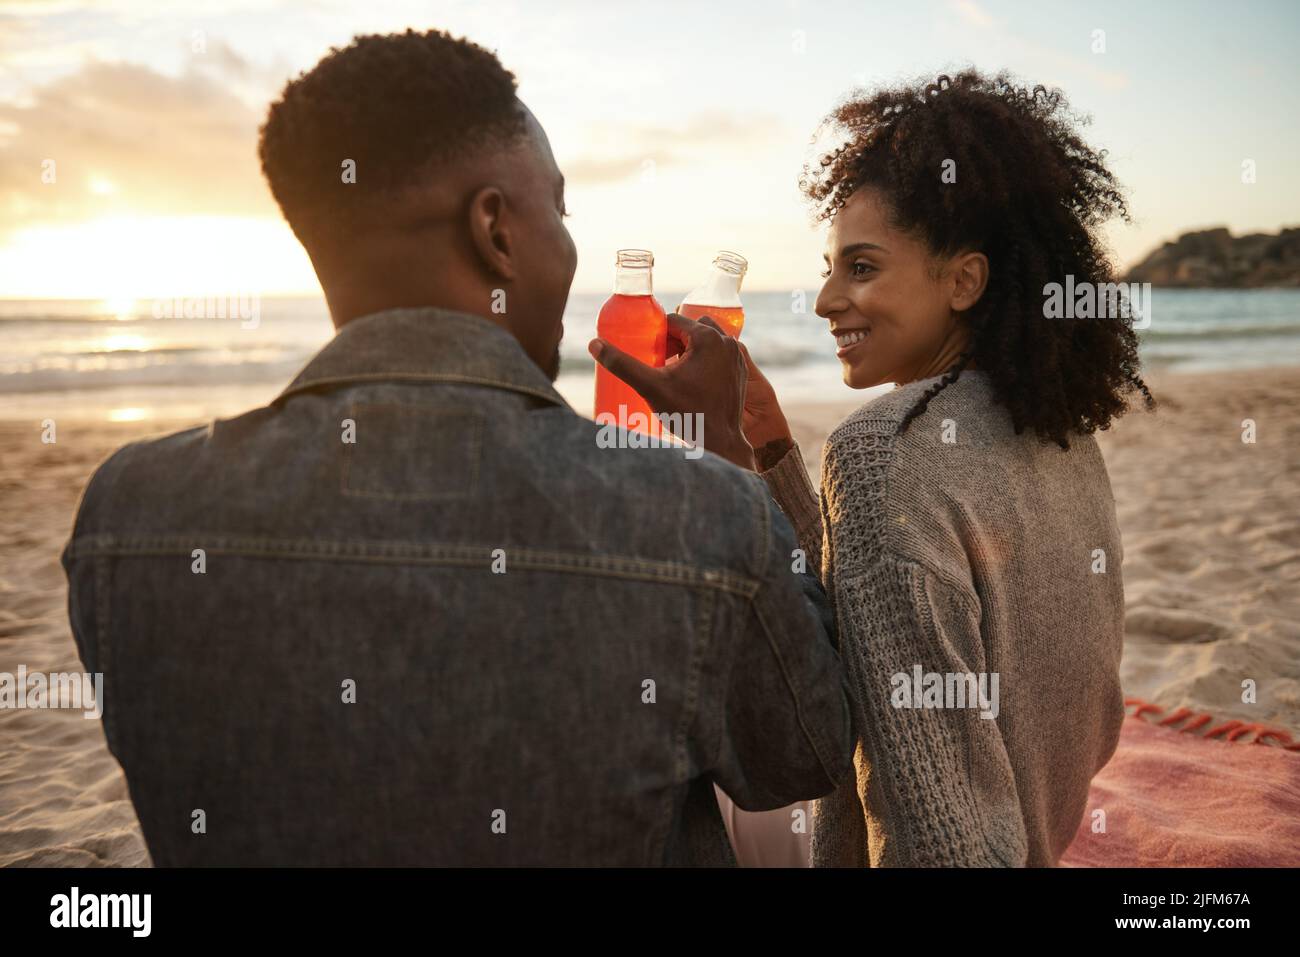 Sonriendo joven pareja multiétnica bebiendo jugo en una playa de arena al atardecer Foto de stock